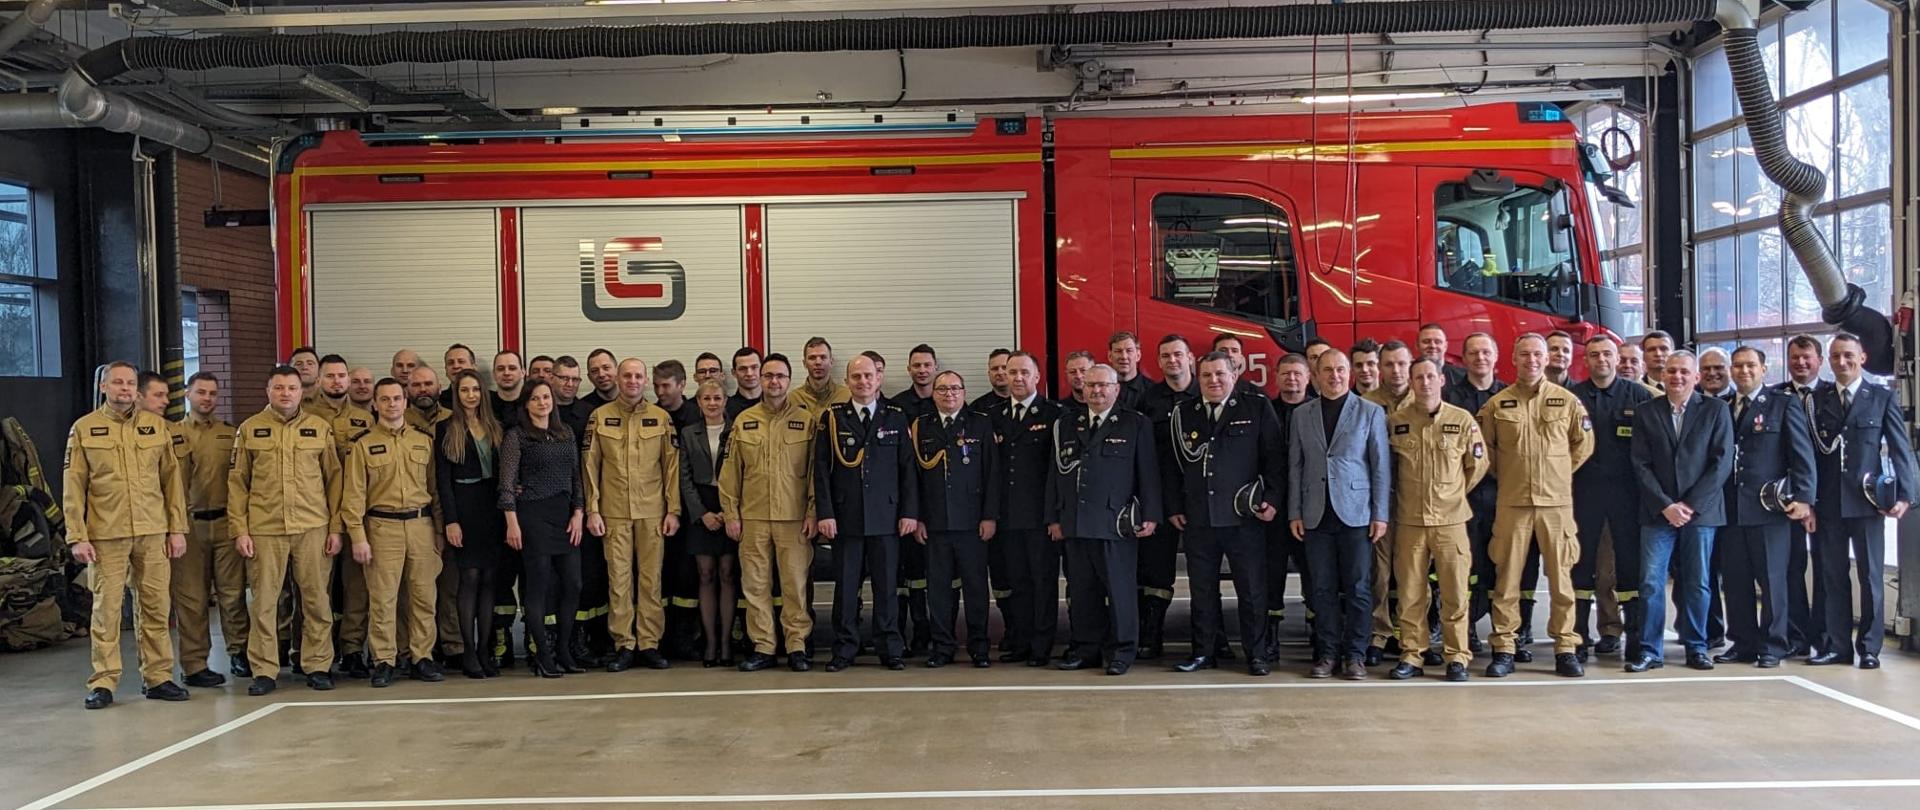 Uroczysta zmiana służby z okazji przejścia na zaopatrzenie emerytalne Zastępcy Komendanta Powiatowego Państwowej Straży Pożarnej w Mikołowie